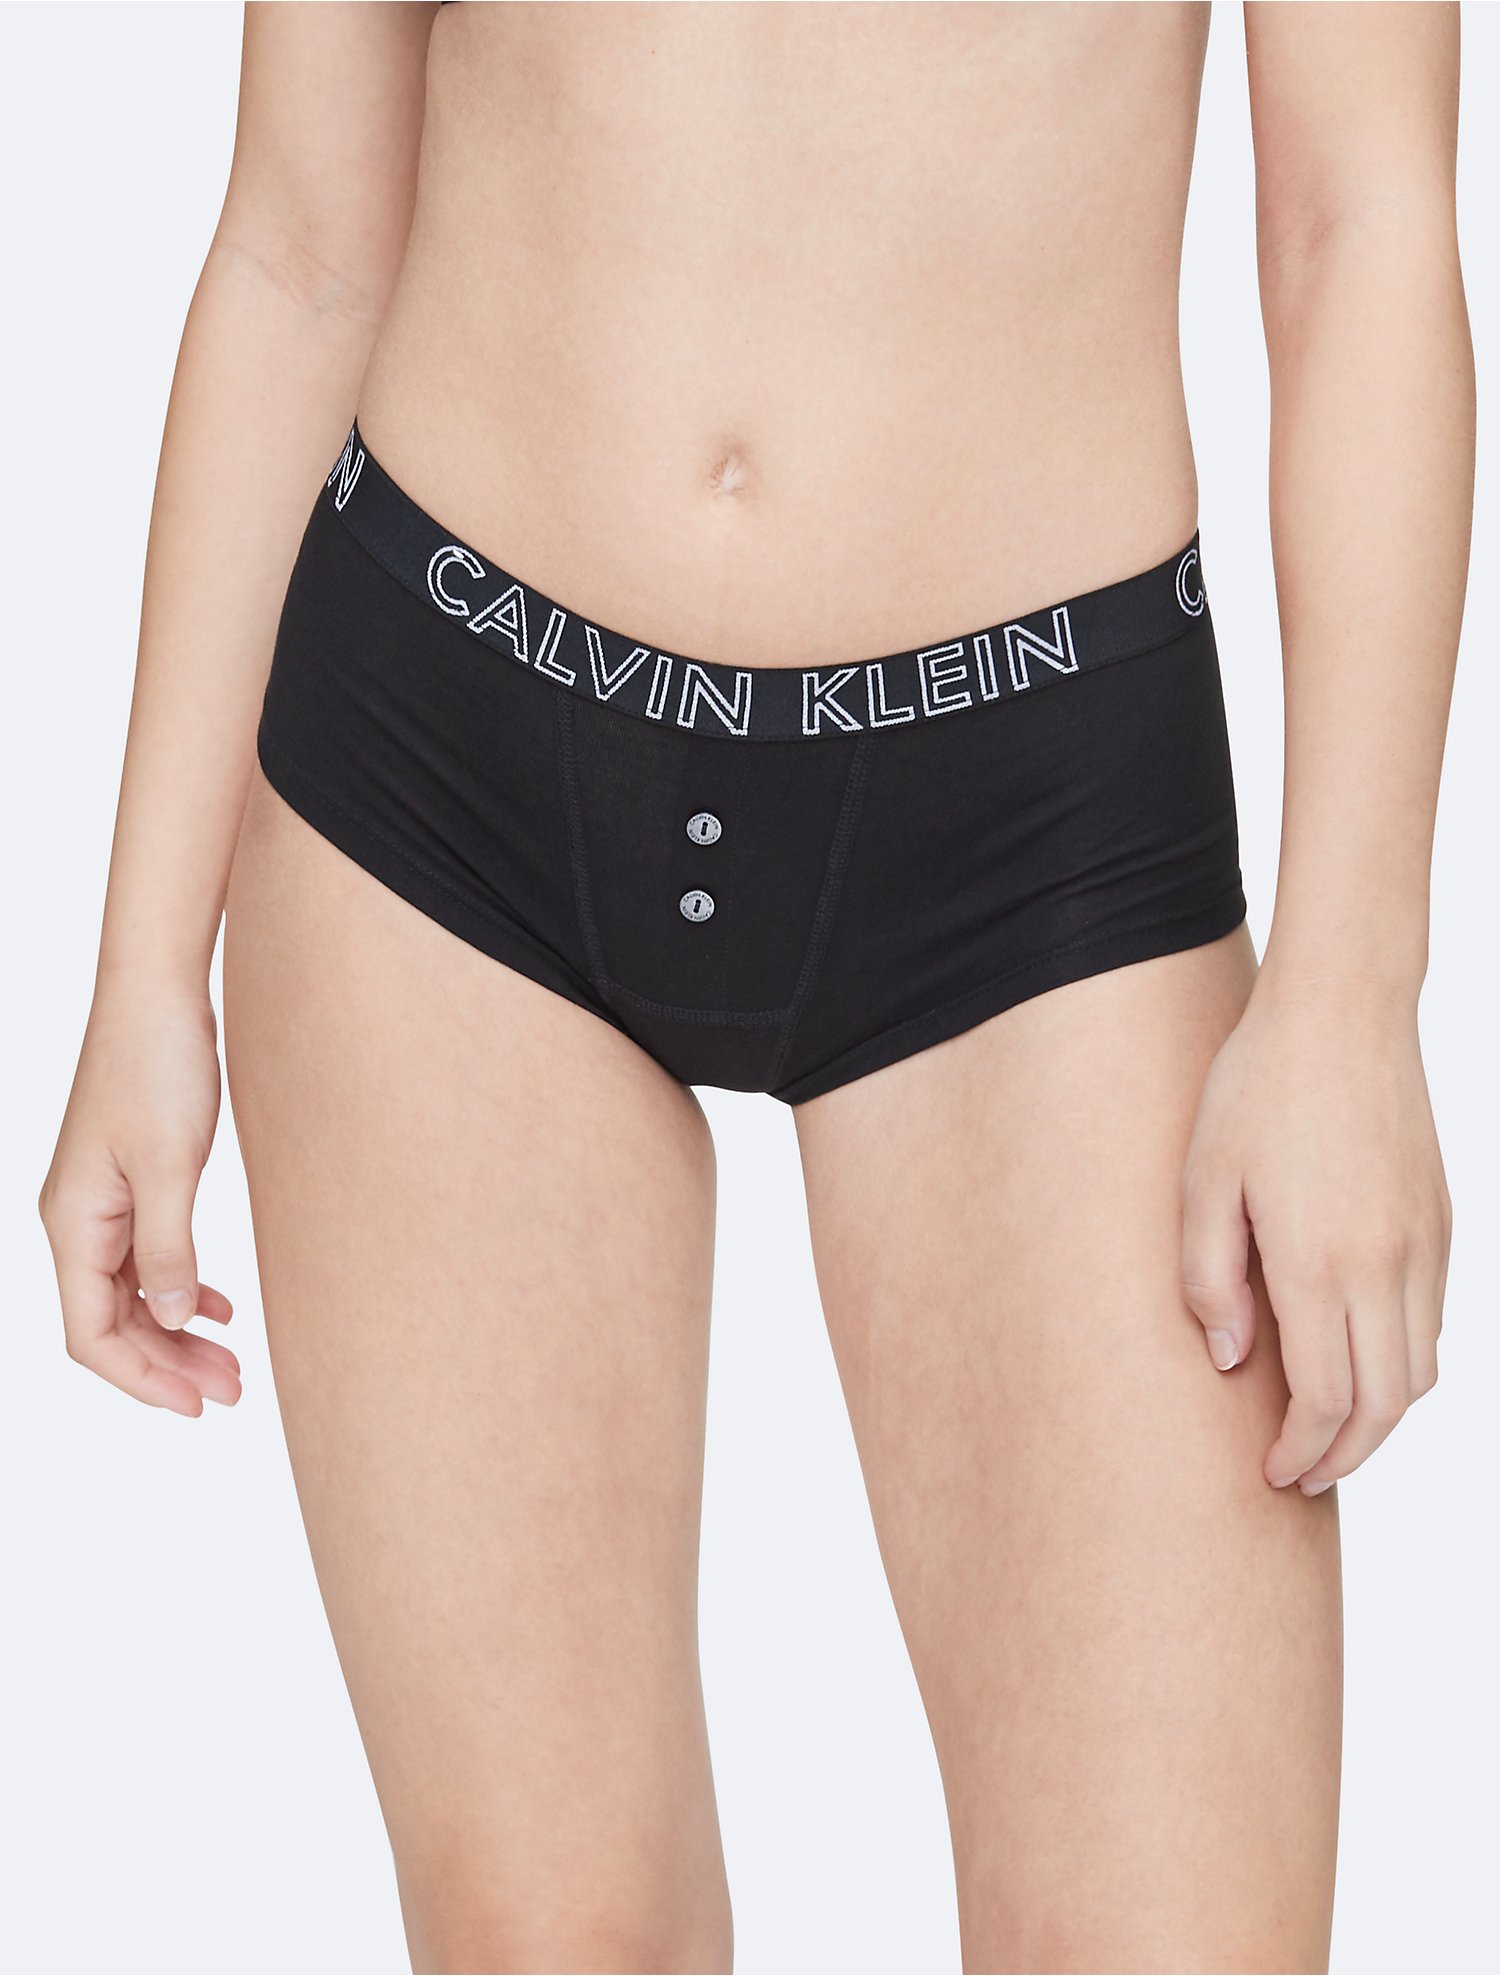 Descubrir 41+ imagen boyshort calvin klein womens underwear